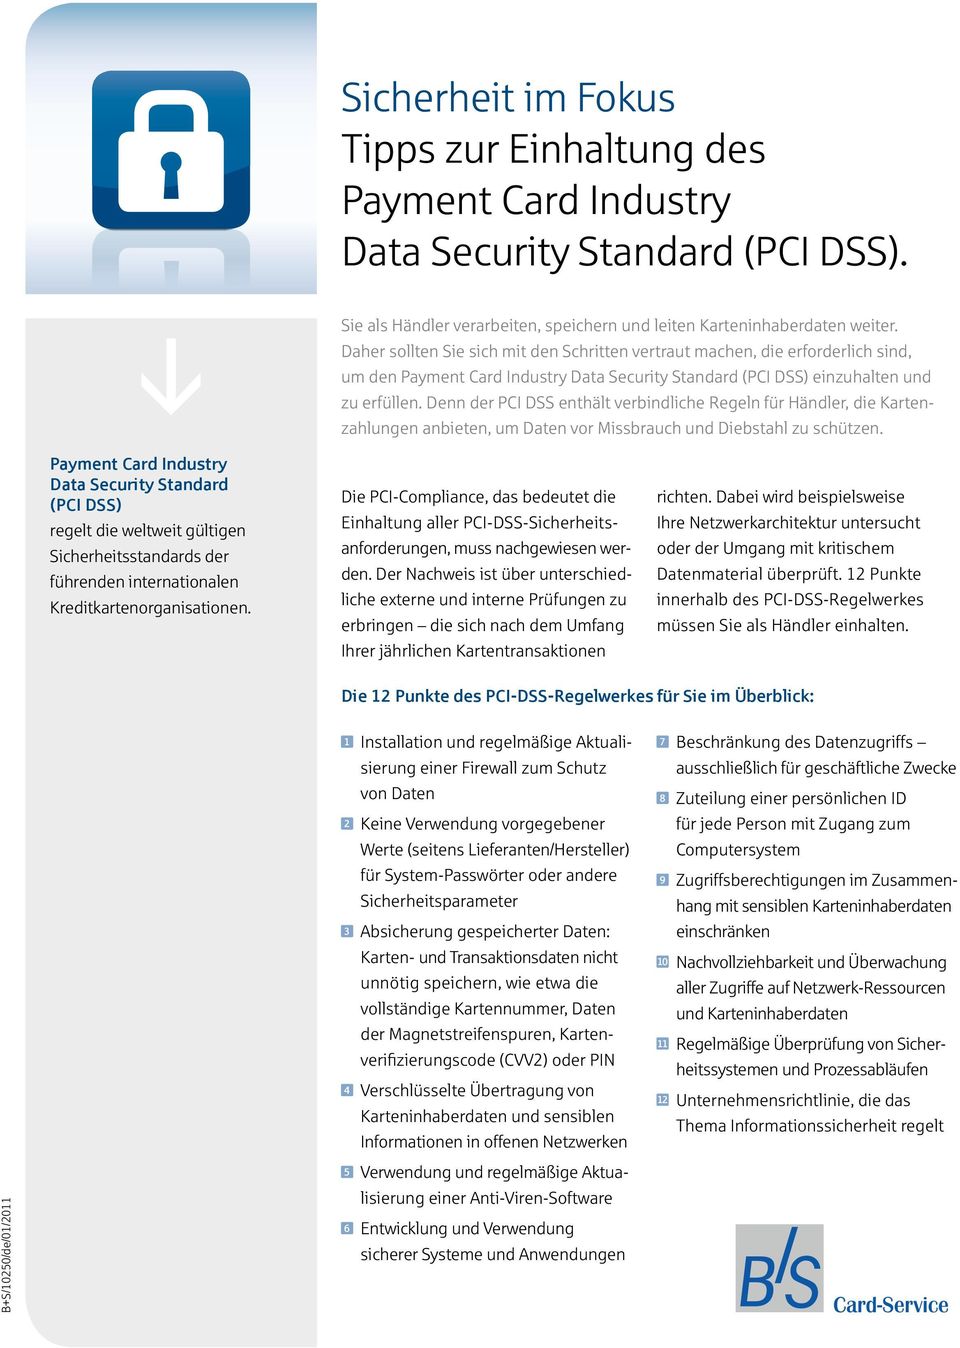 Denn der PCI DSS enthält verbindliche Regeln für Händler, die Kartenzahlungen anbieten, um Daten vor Missbrauch und Diebstahl zu schützen.